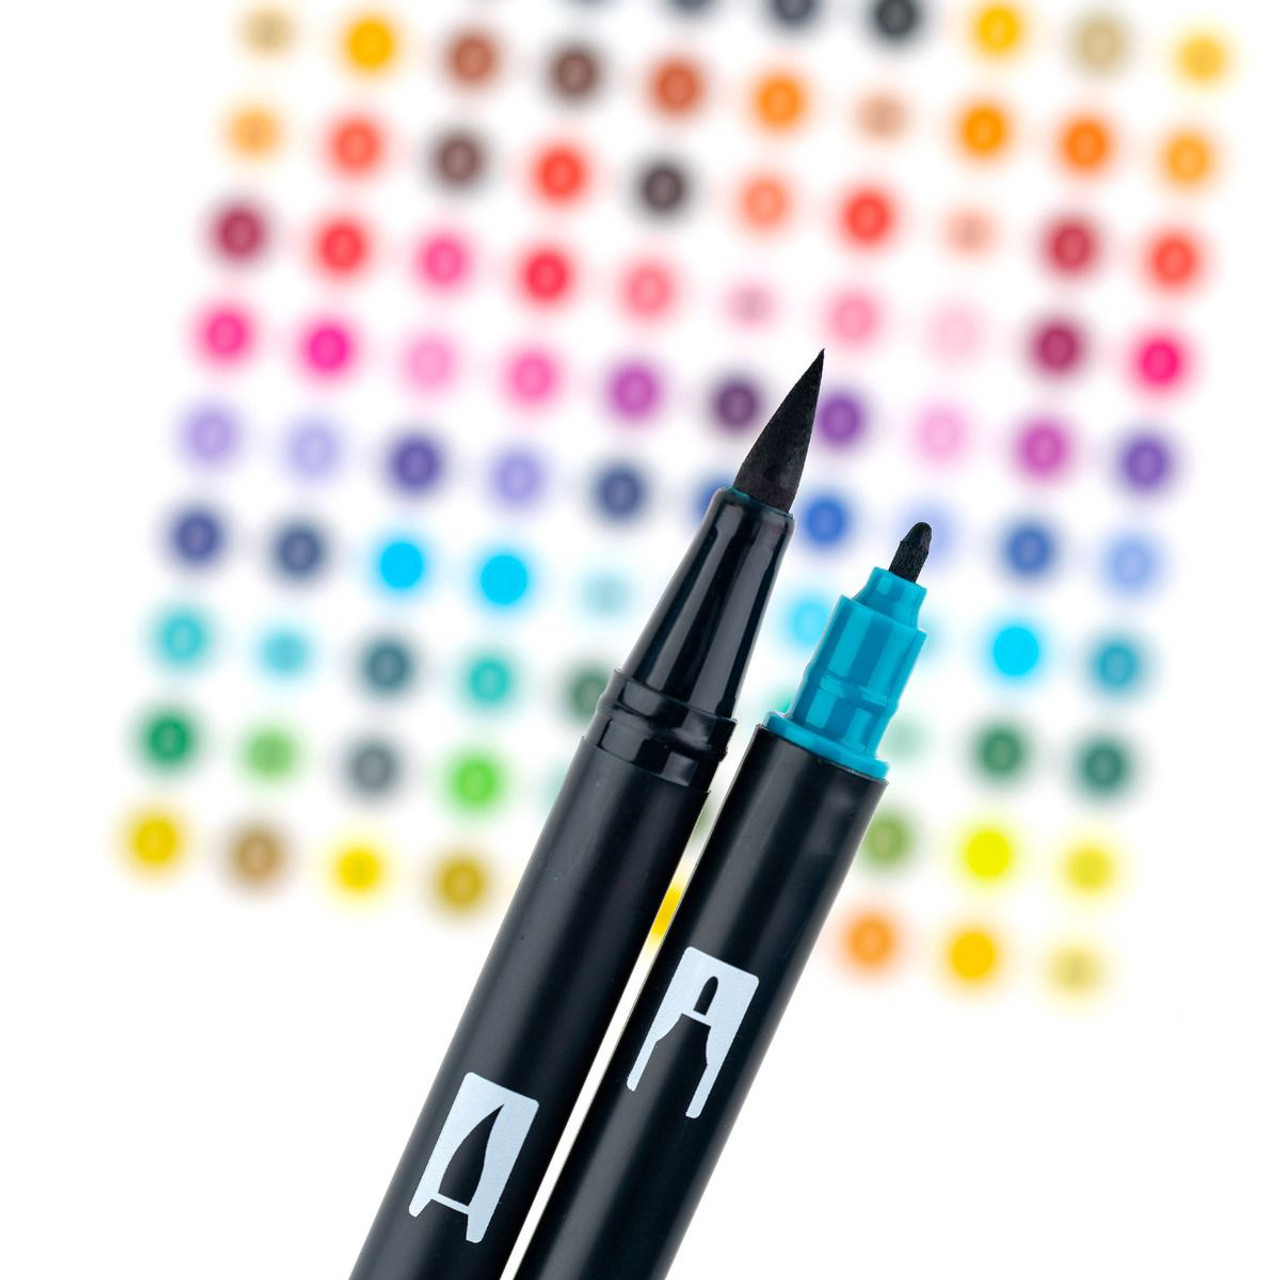 Dual Brush Pen Art Markers, Watercolor Favorites, 10-Pack + Free Dual Brush  Pen